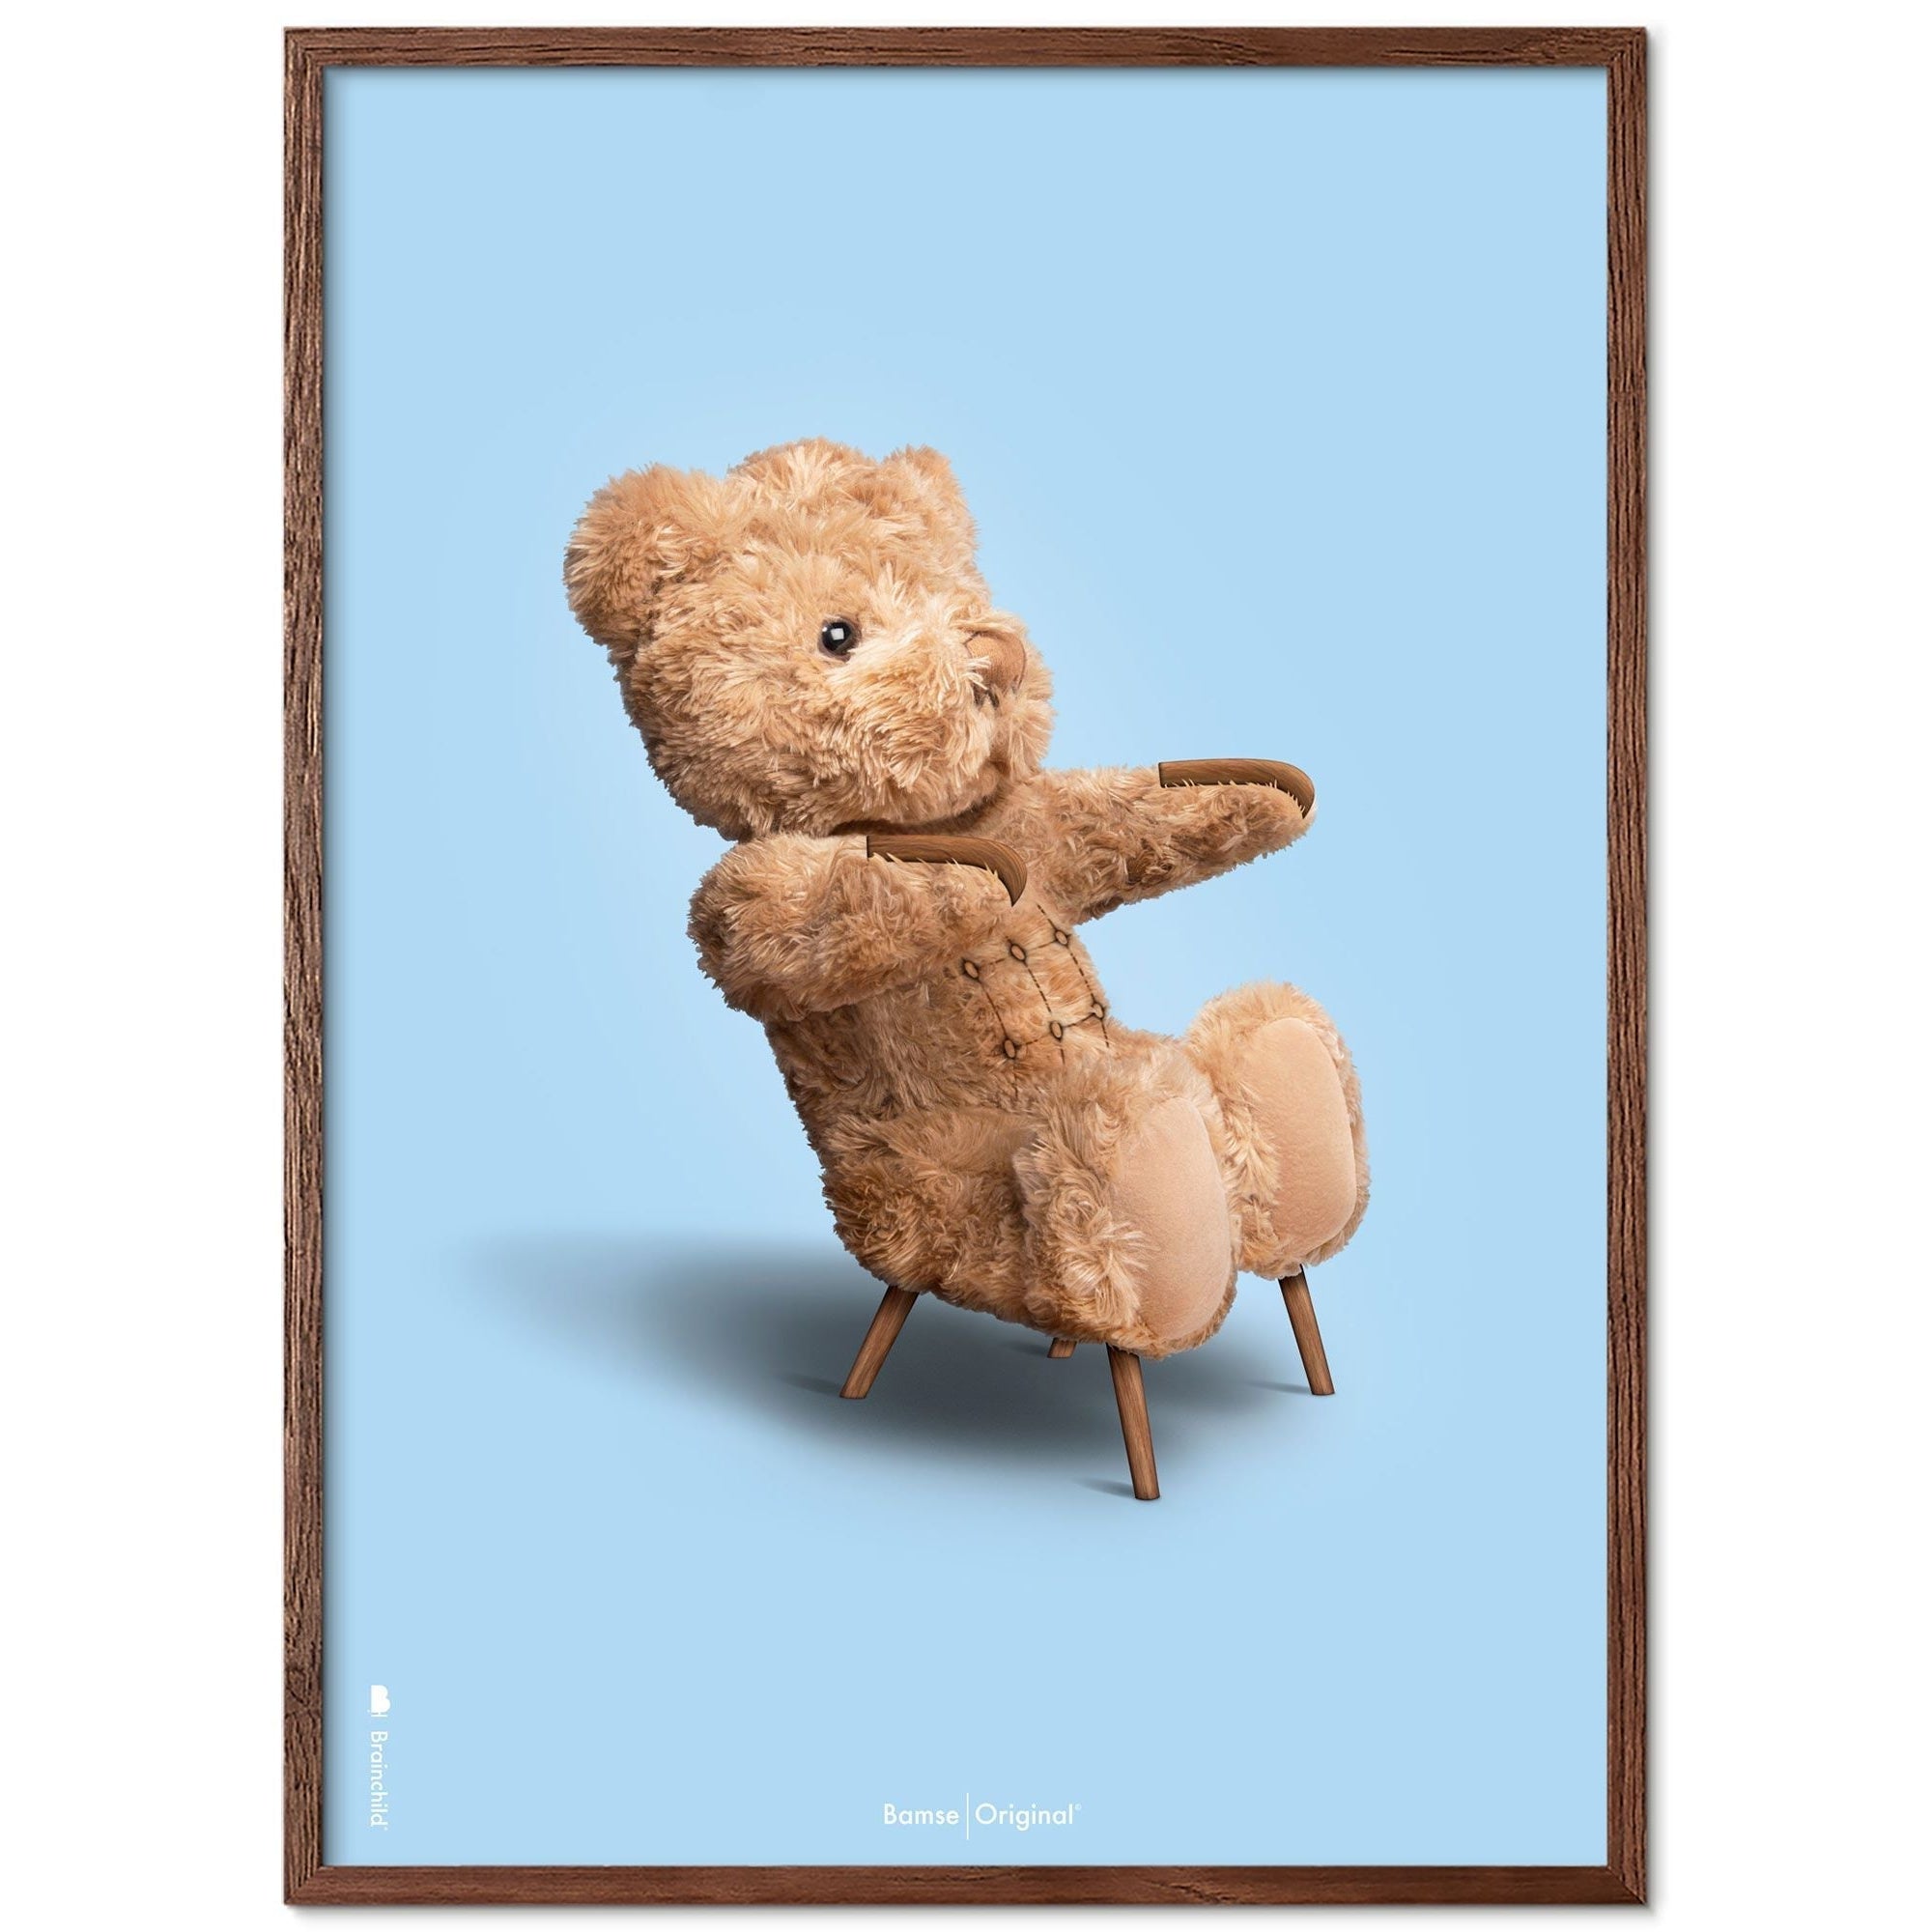 Brainchild Teddy Bear Classic Poster Frame lavet af Dark Wood Ram 30x40 cm, lyseblå baggrund